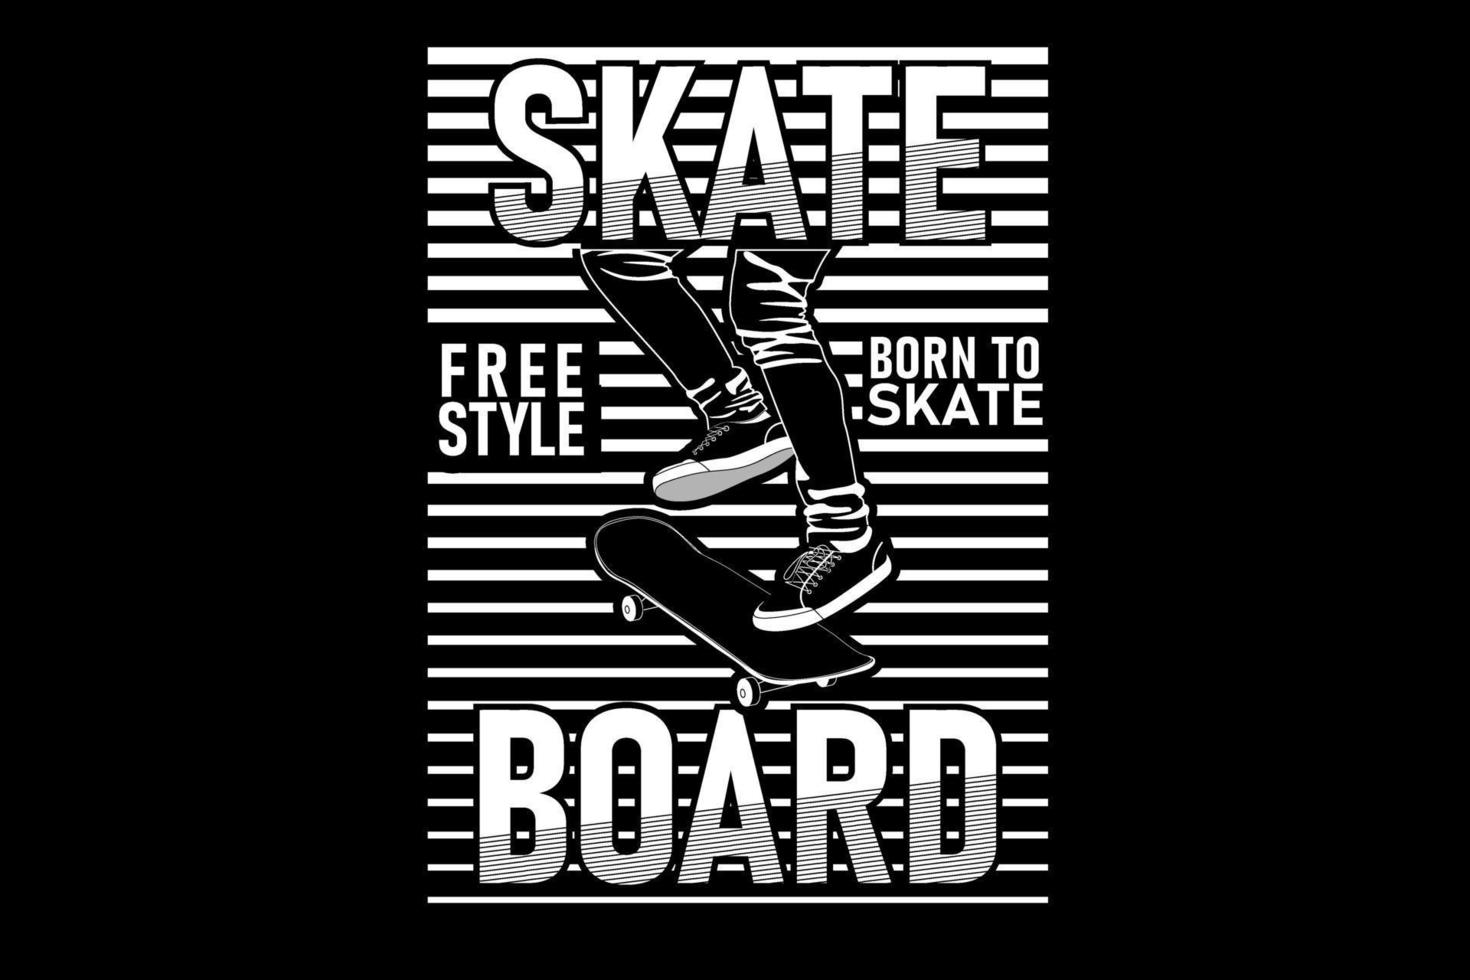 Skateboard design silhouette vector